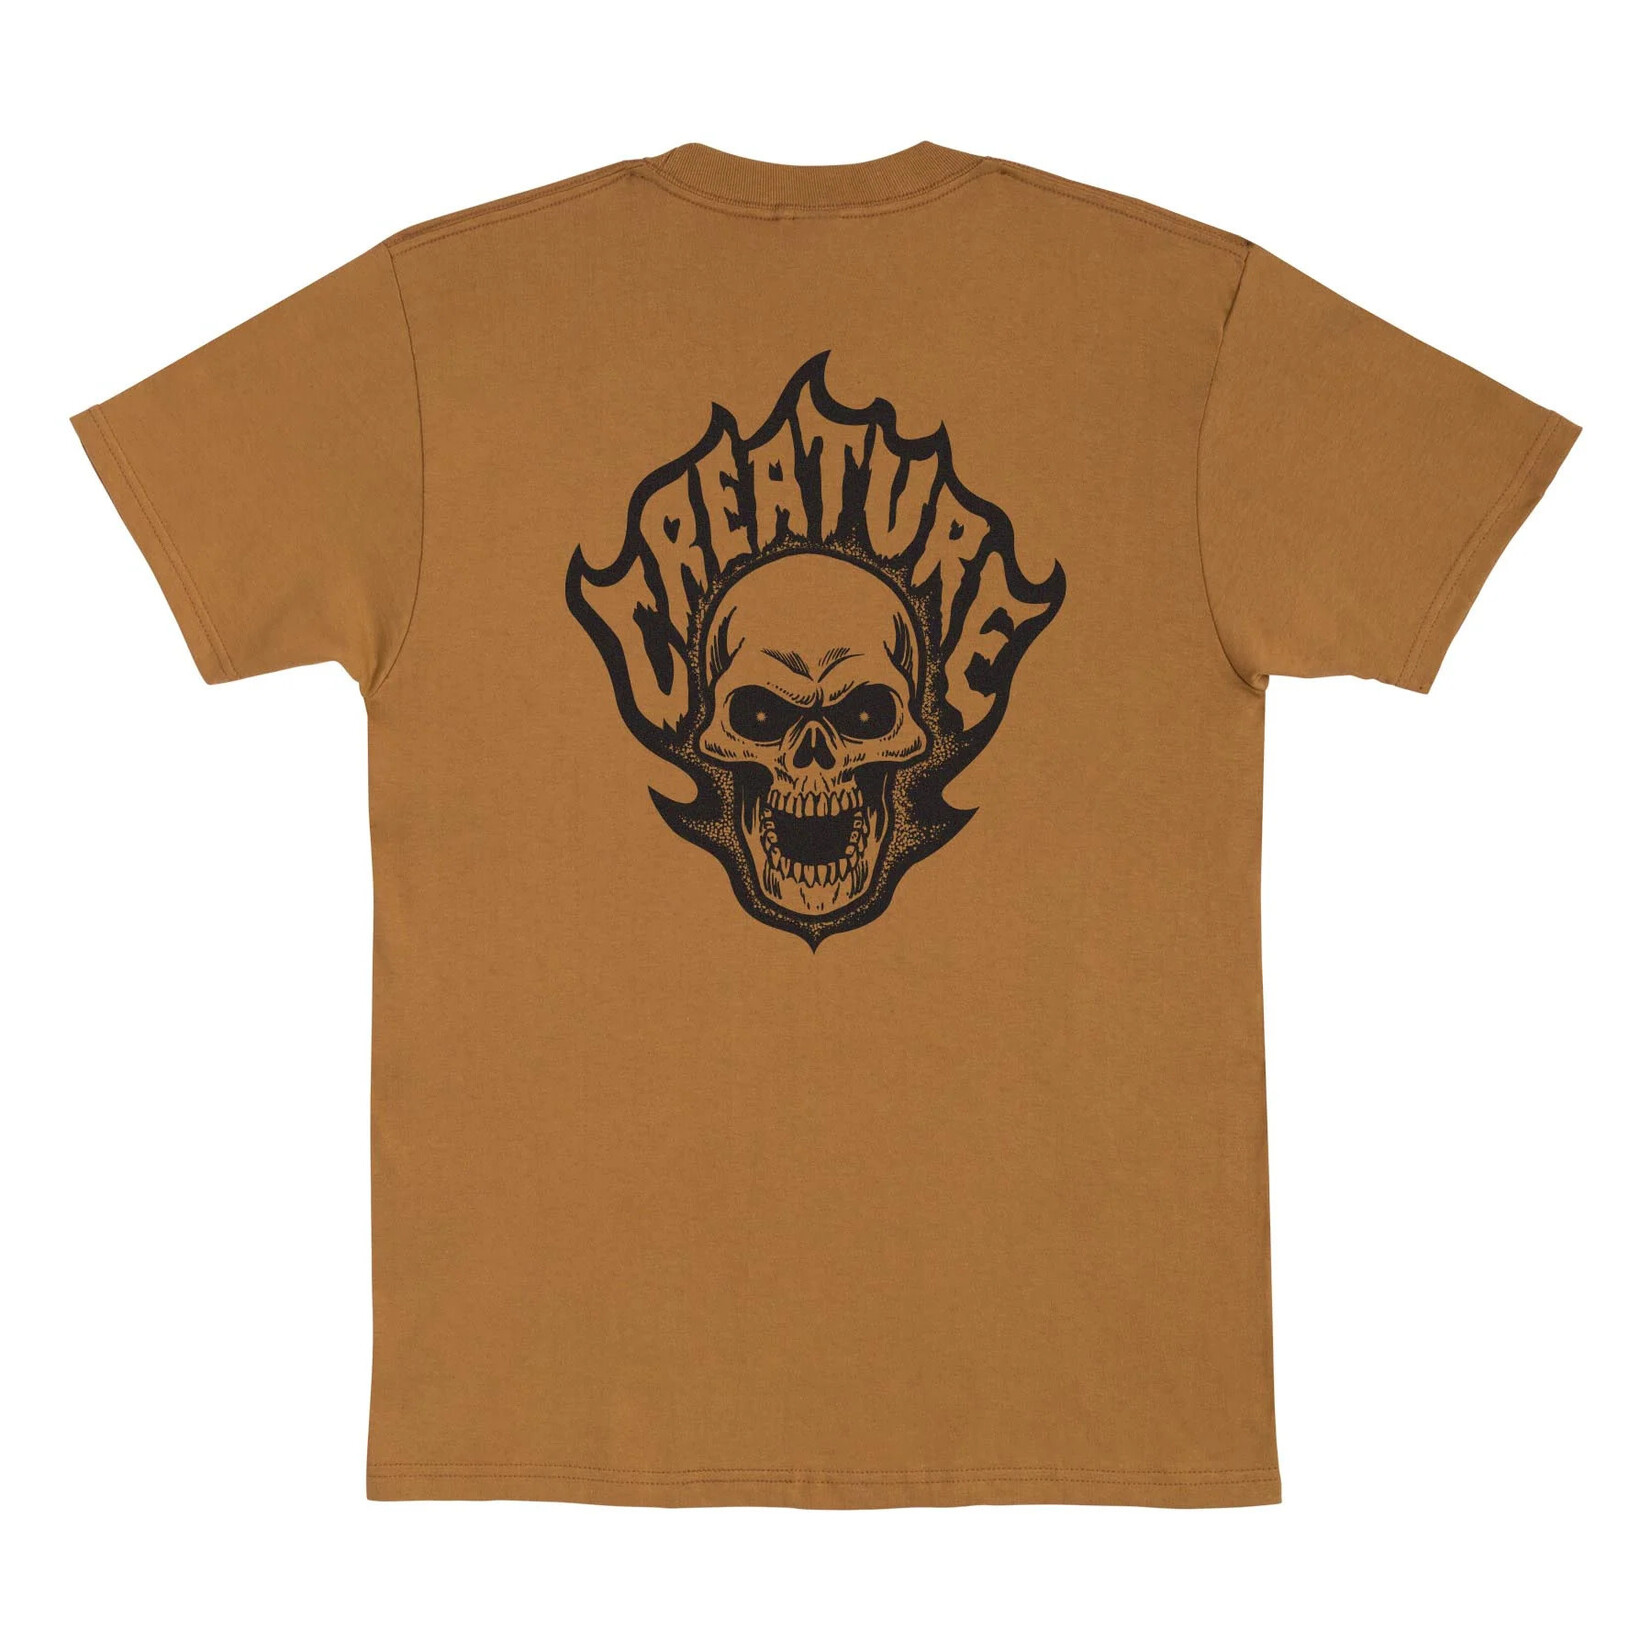 Creature Creature Bonehead Flame T-Shirt - Brown Sugar